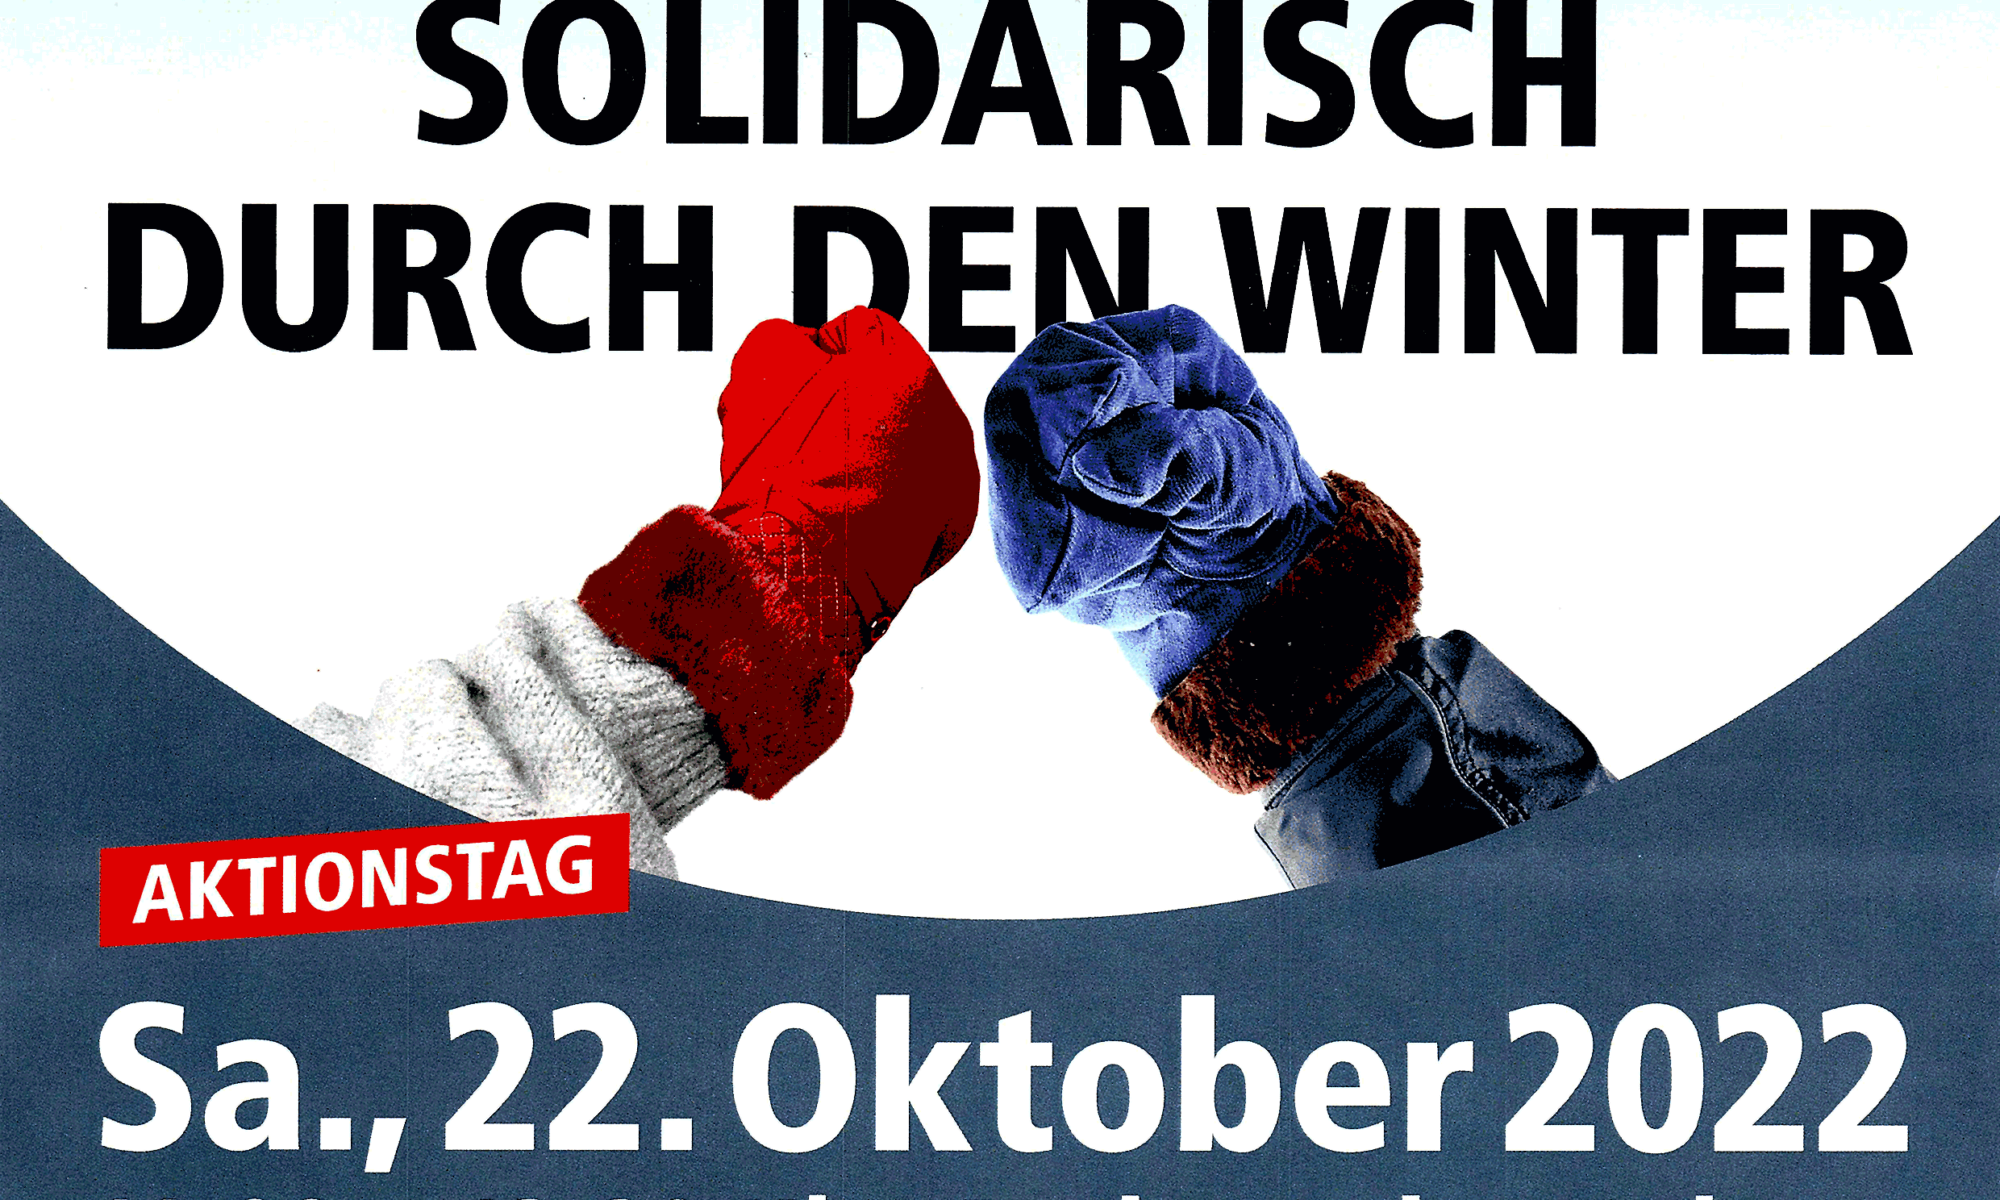 Solidarisch durch den Winter – Aktionstag: Samstag, 22. Oktober 2022, 11:00–13:30 Uhr, Rathausplatz Witten